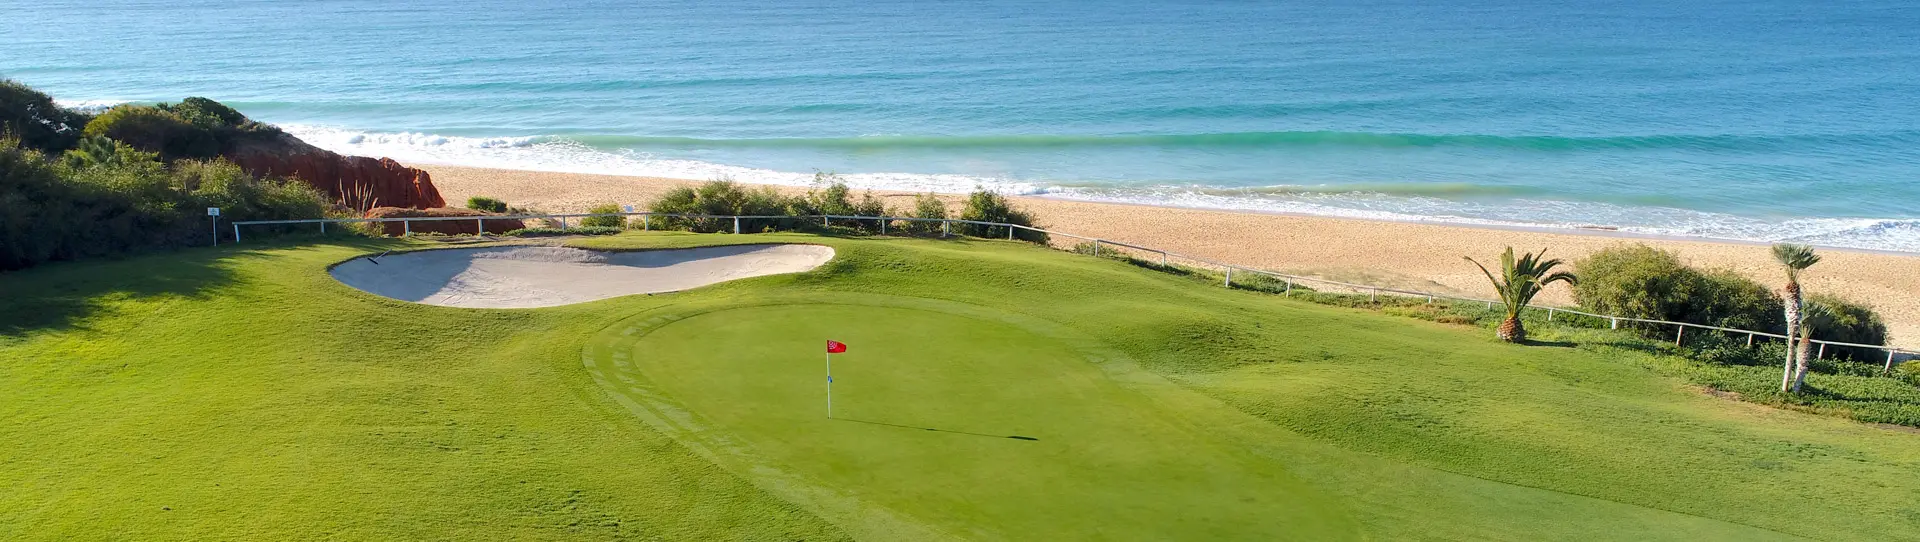 Portugal golf courses - Vale do Lobo Ocean - Photo 1